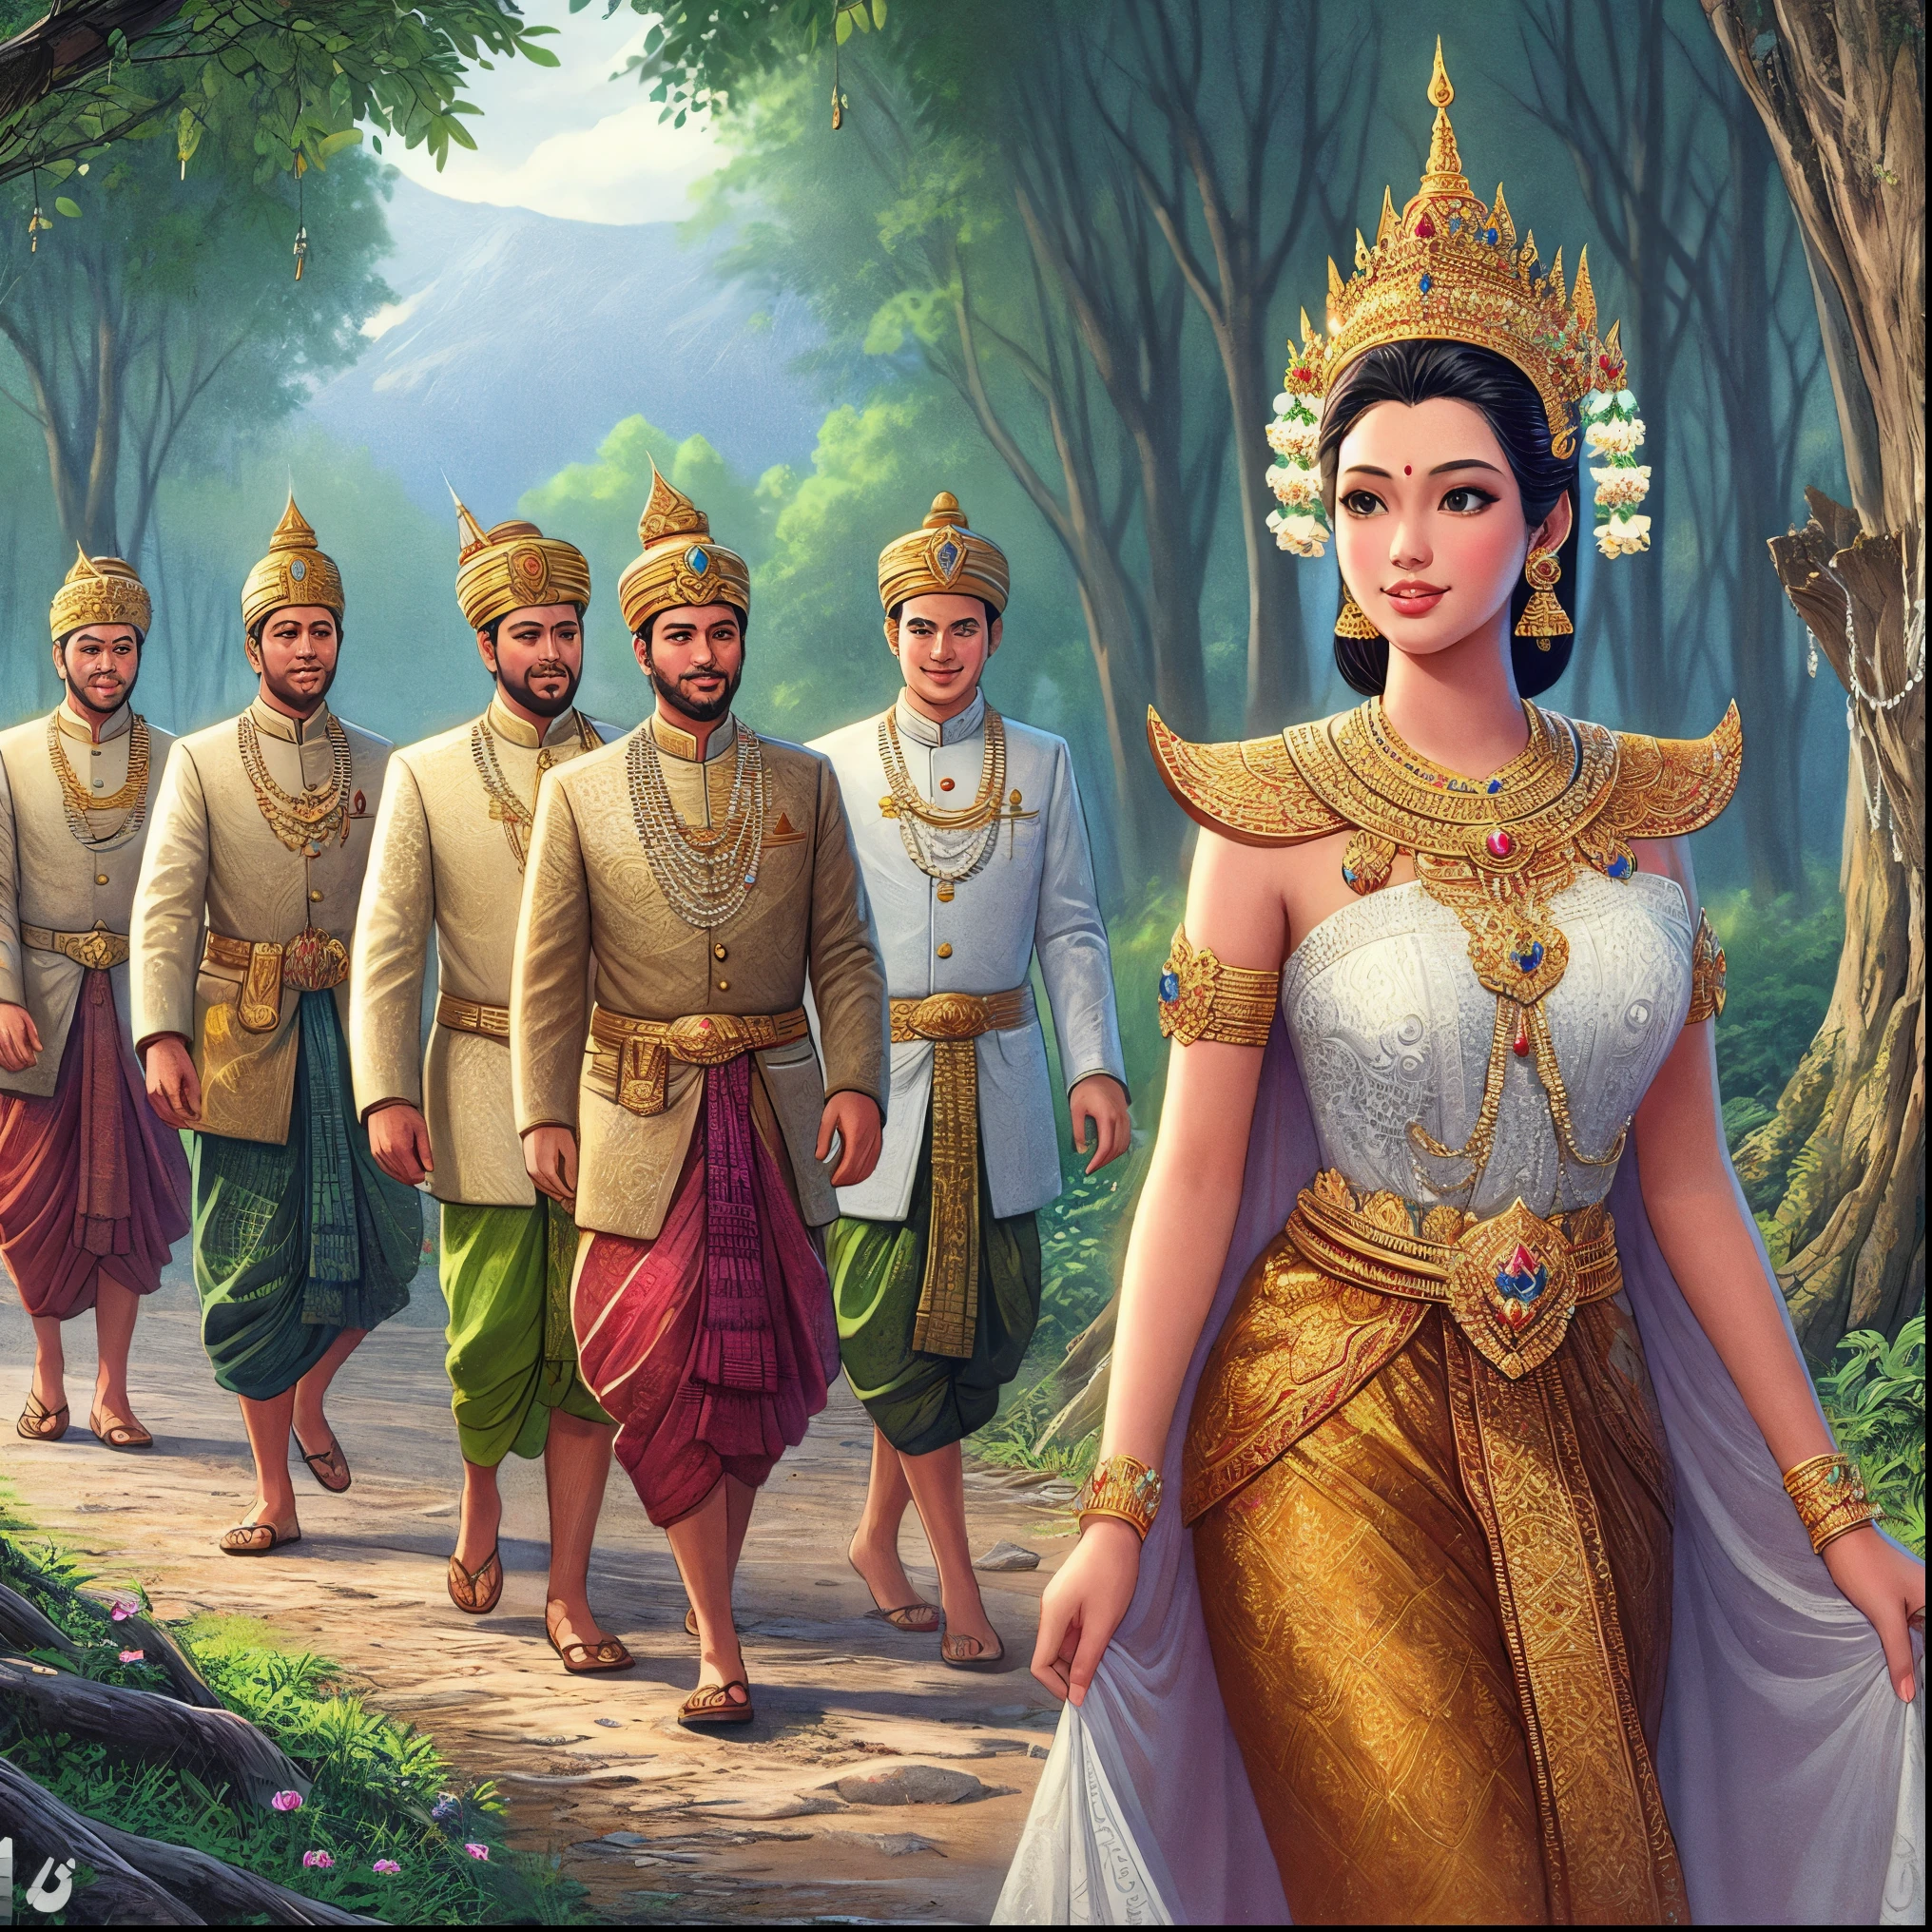 길을 걷고 있는 한 무리의 사람들의 아라페드 이미지, 흰 예복을 입은 고대 왕들, 태국 예술, 고대 리부 공주, 니반 찬타라, 아름다운 환상의 황후, 전통적인, 전통적인 beauty, 인도의 부의 여신, 라마얀 출신, 앙코르 테이퍼드, 여신들, 고대 부족, 미인대회 렌더링, 왕실 여성, 여신 여왕